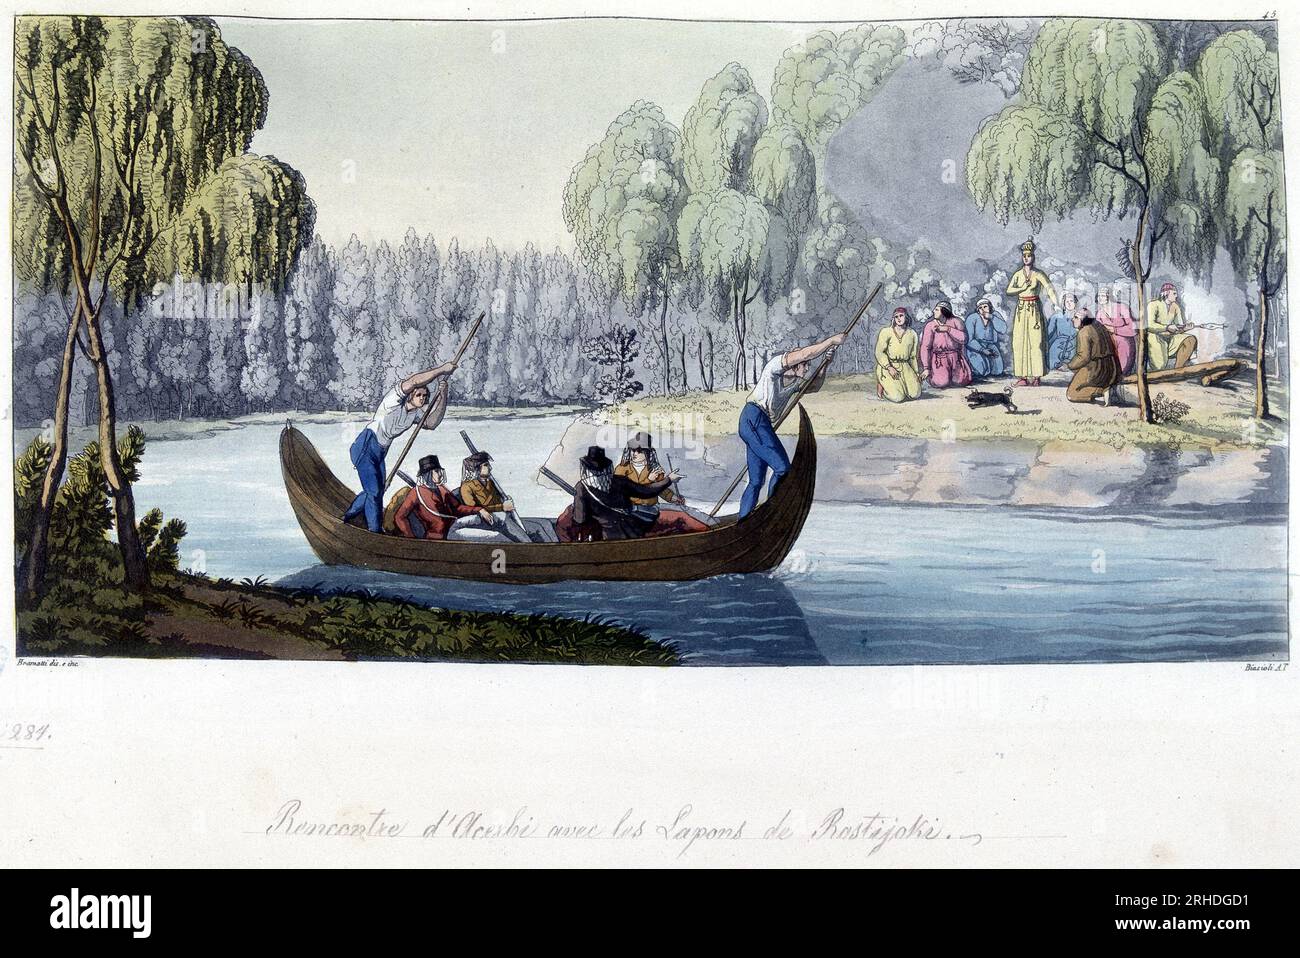 Rencontre d'Acerbi avec les lapons de Rostijoki, Norvege - in 'Le costume ancien et modern' par Jules Ferrario, 1819-1820 Stockfoto